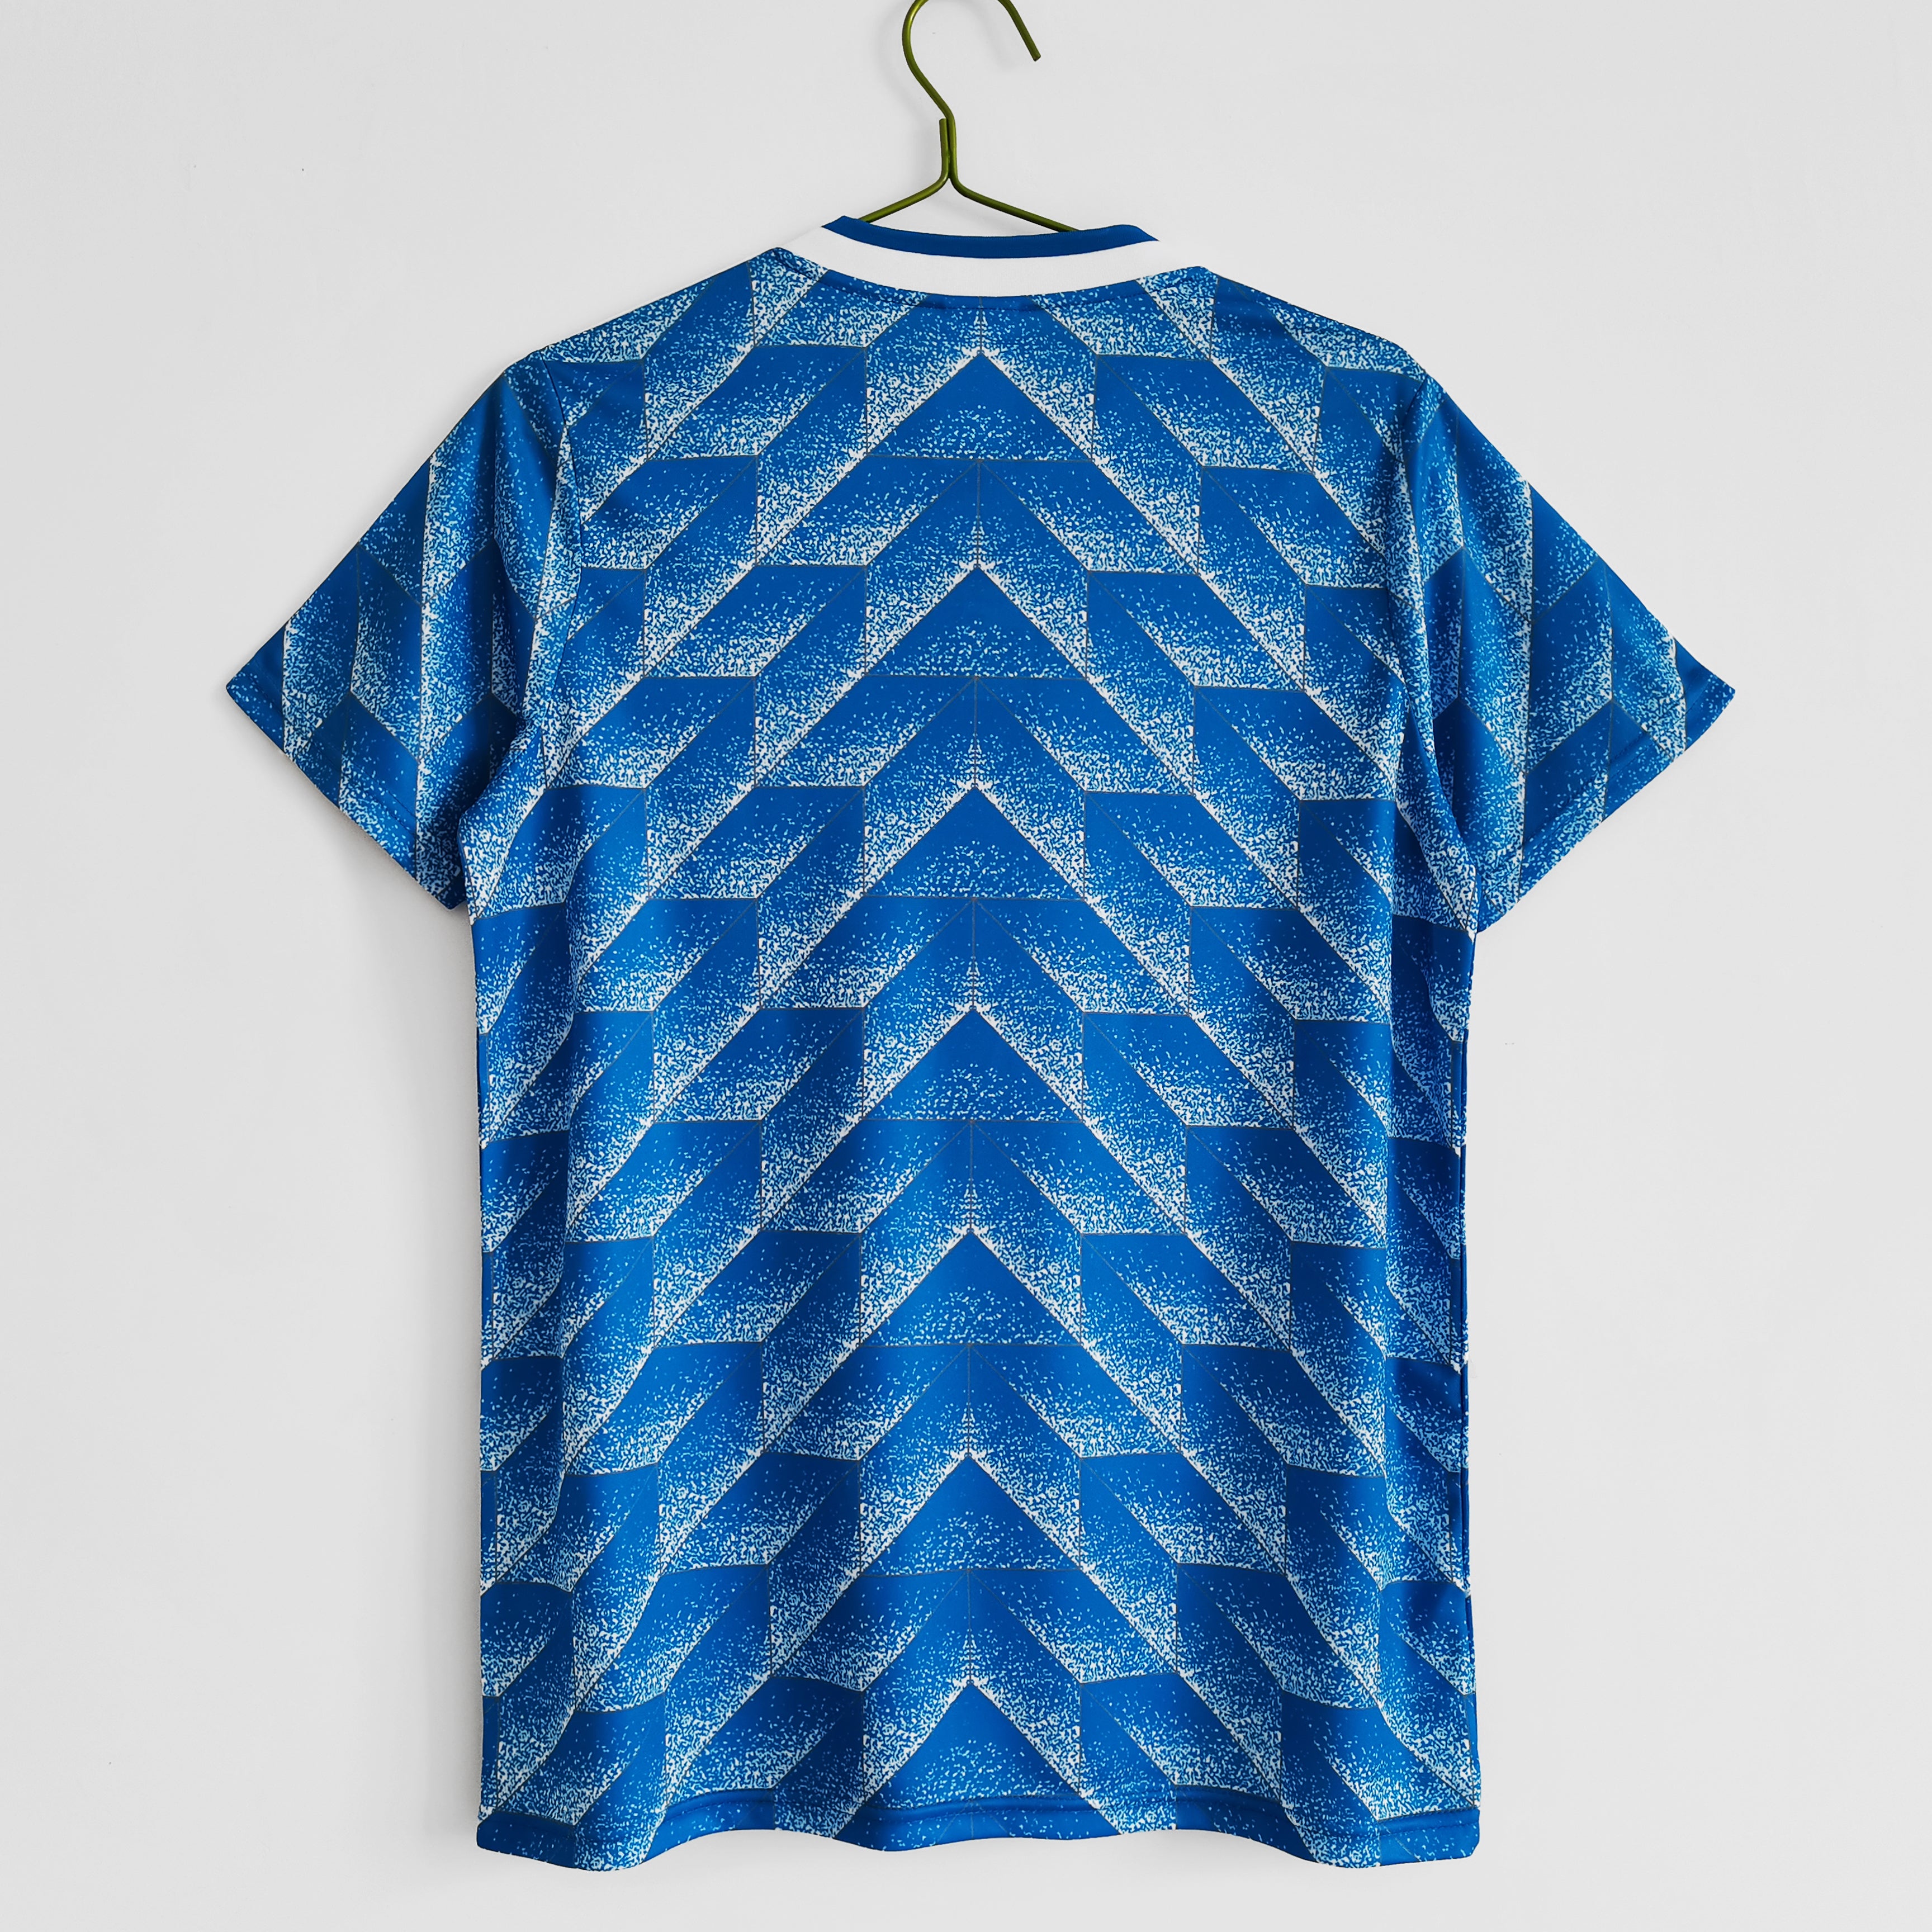 חולצת כדורגל הולנד רטרו 1988 חוץ